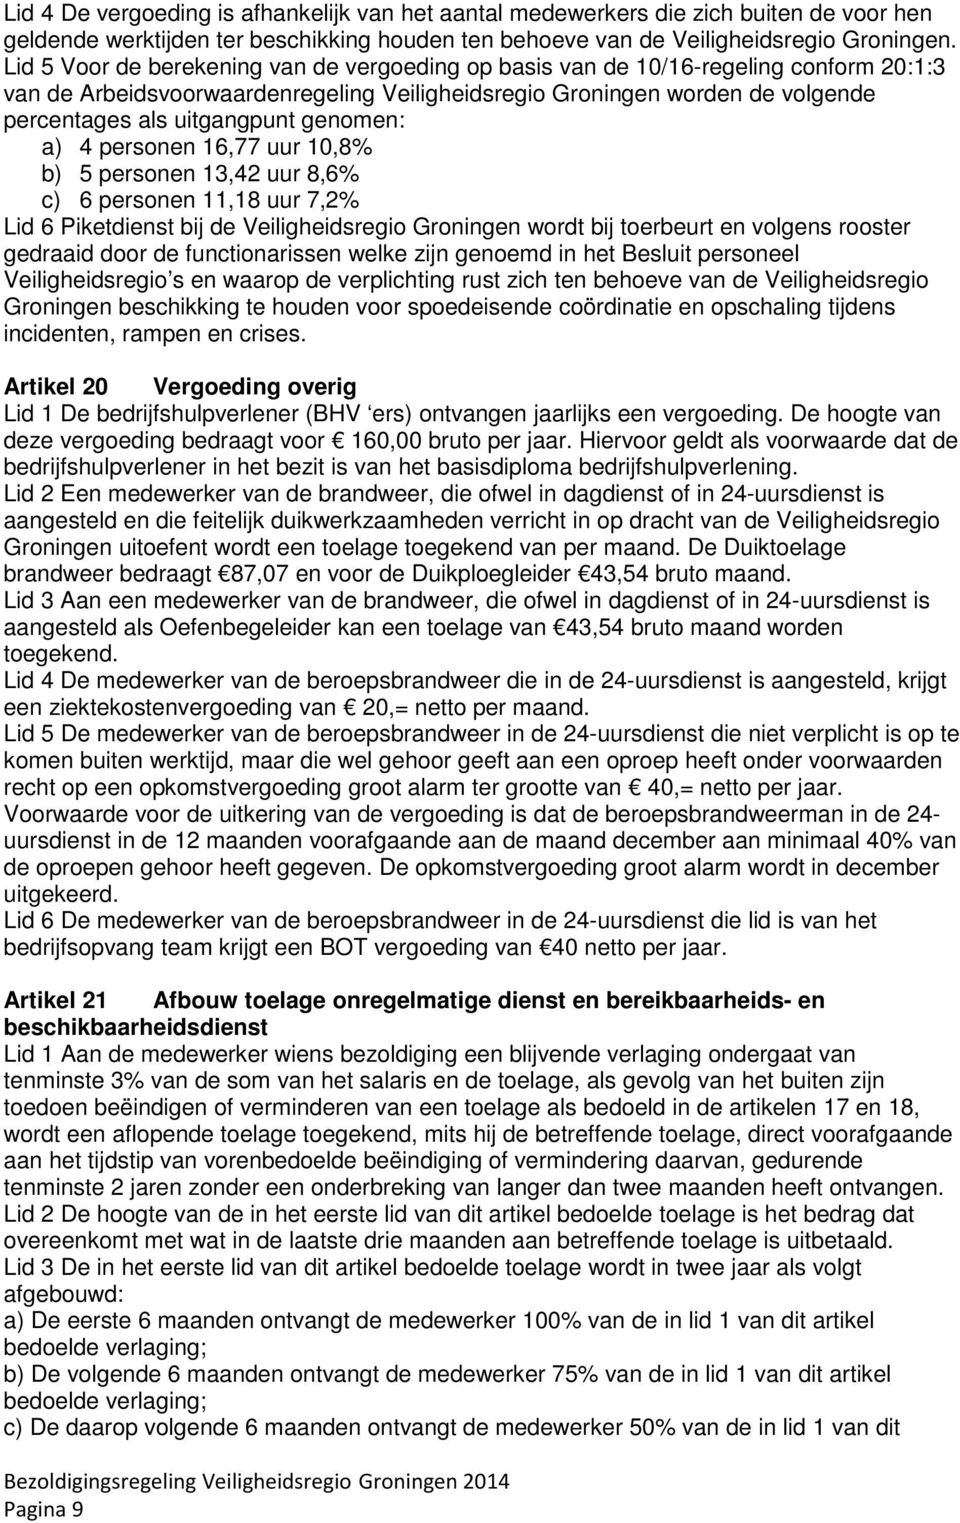 genomen: a) 4 personen 16,77 uur 10,8% b) 5 personen 13,42 uur 8,6% c) 6 personen 11,18 uur 7,2% Lid 6 Piketdienst bij de Veiligheidsregio Groningen wordt bij toerbeurt en volgens rooster gedraaid